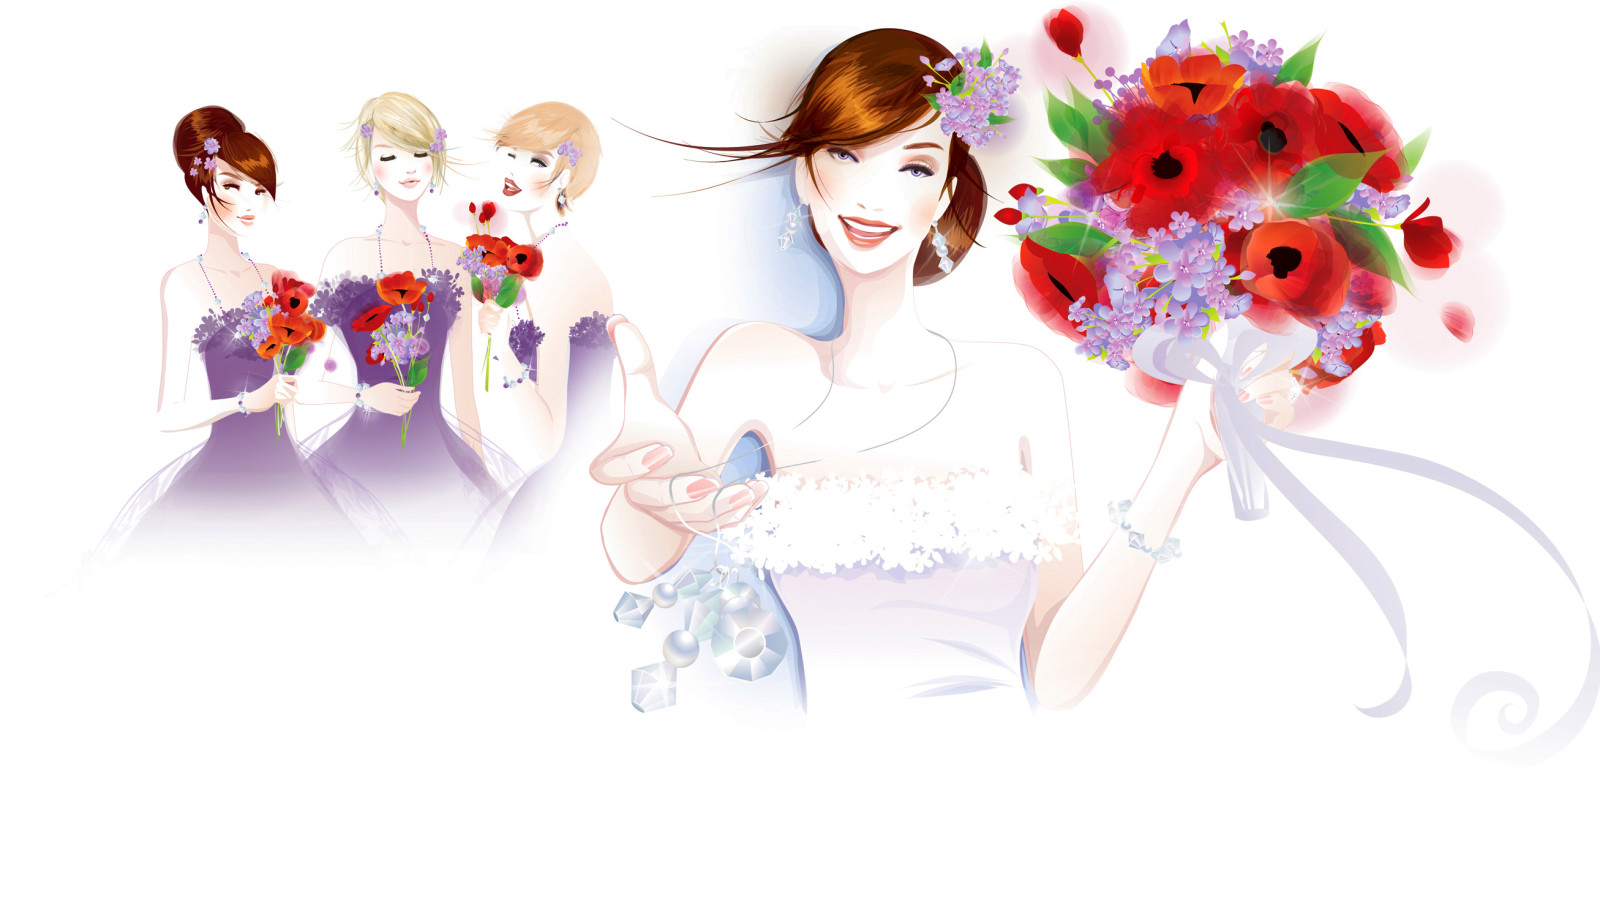 デコレーション, スマイル, フラワーズ, ファッション, 花嫁, 花束, 彼女, ドレス